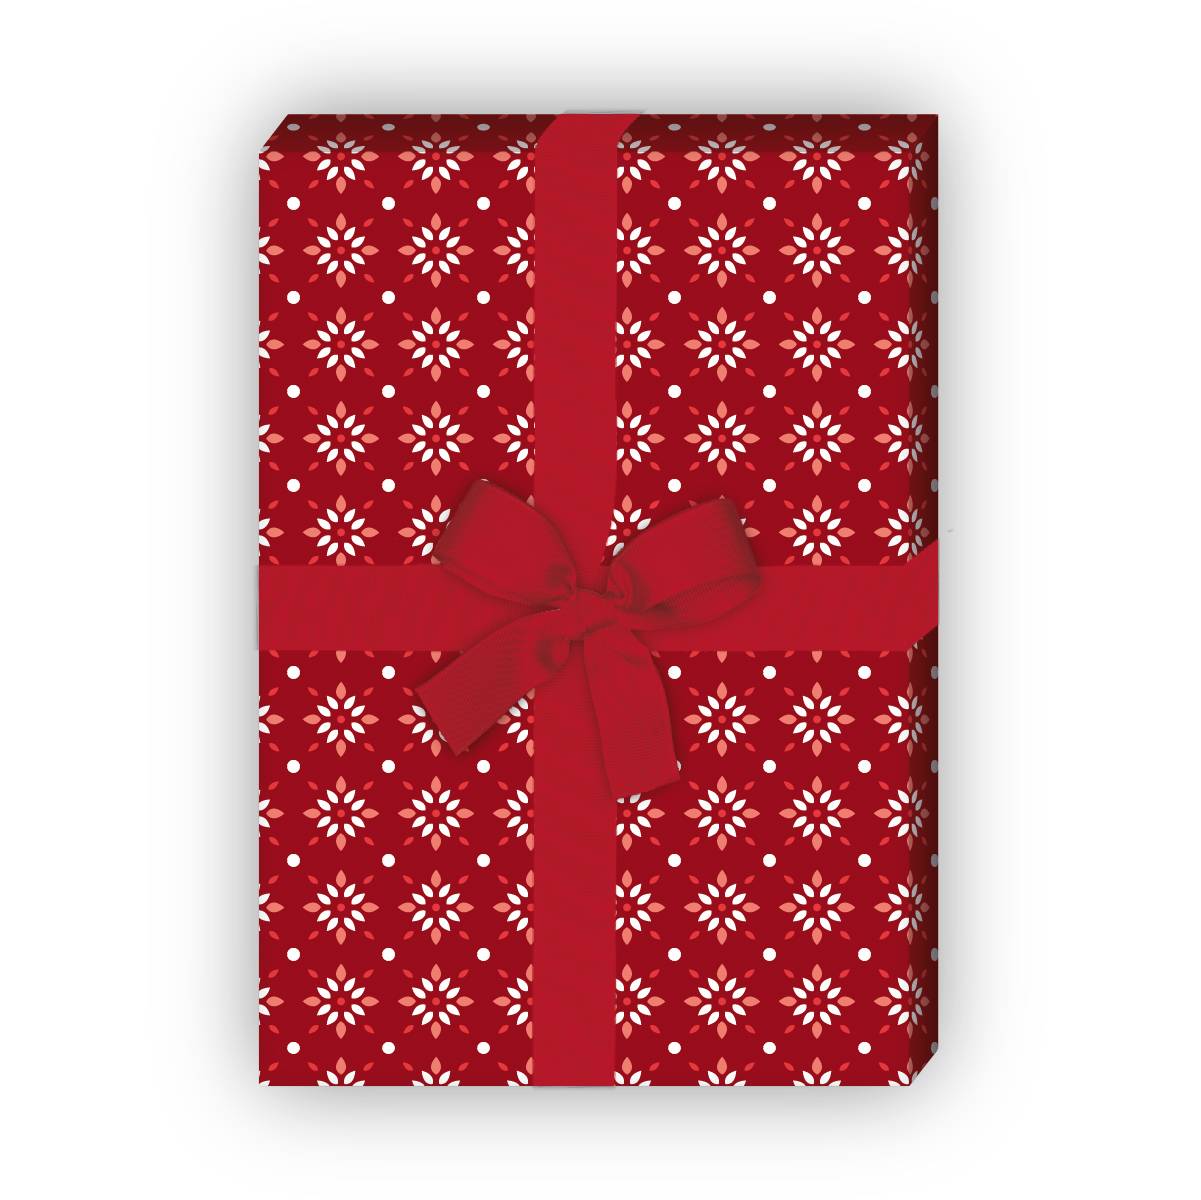 Kartenkaufrausch: Grafisches Geschenkpapier mit kleinem aus unserer Design Papeterie in rot